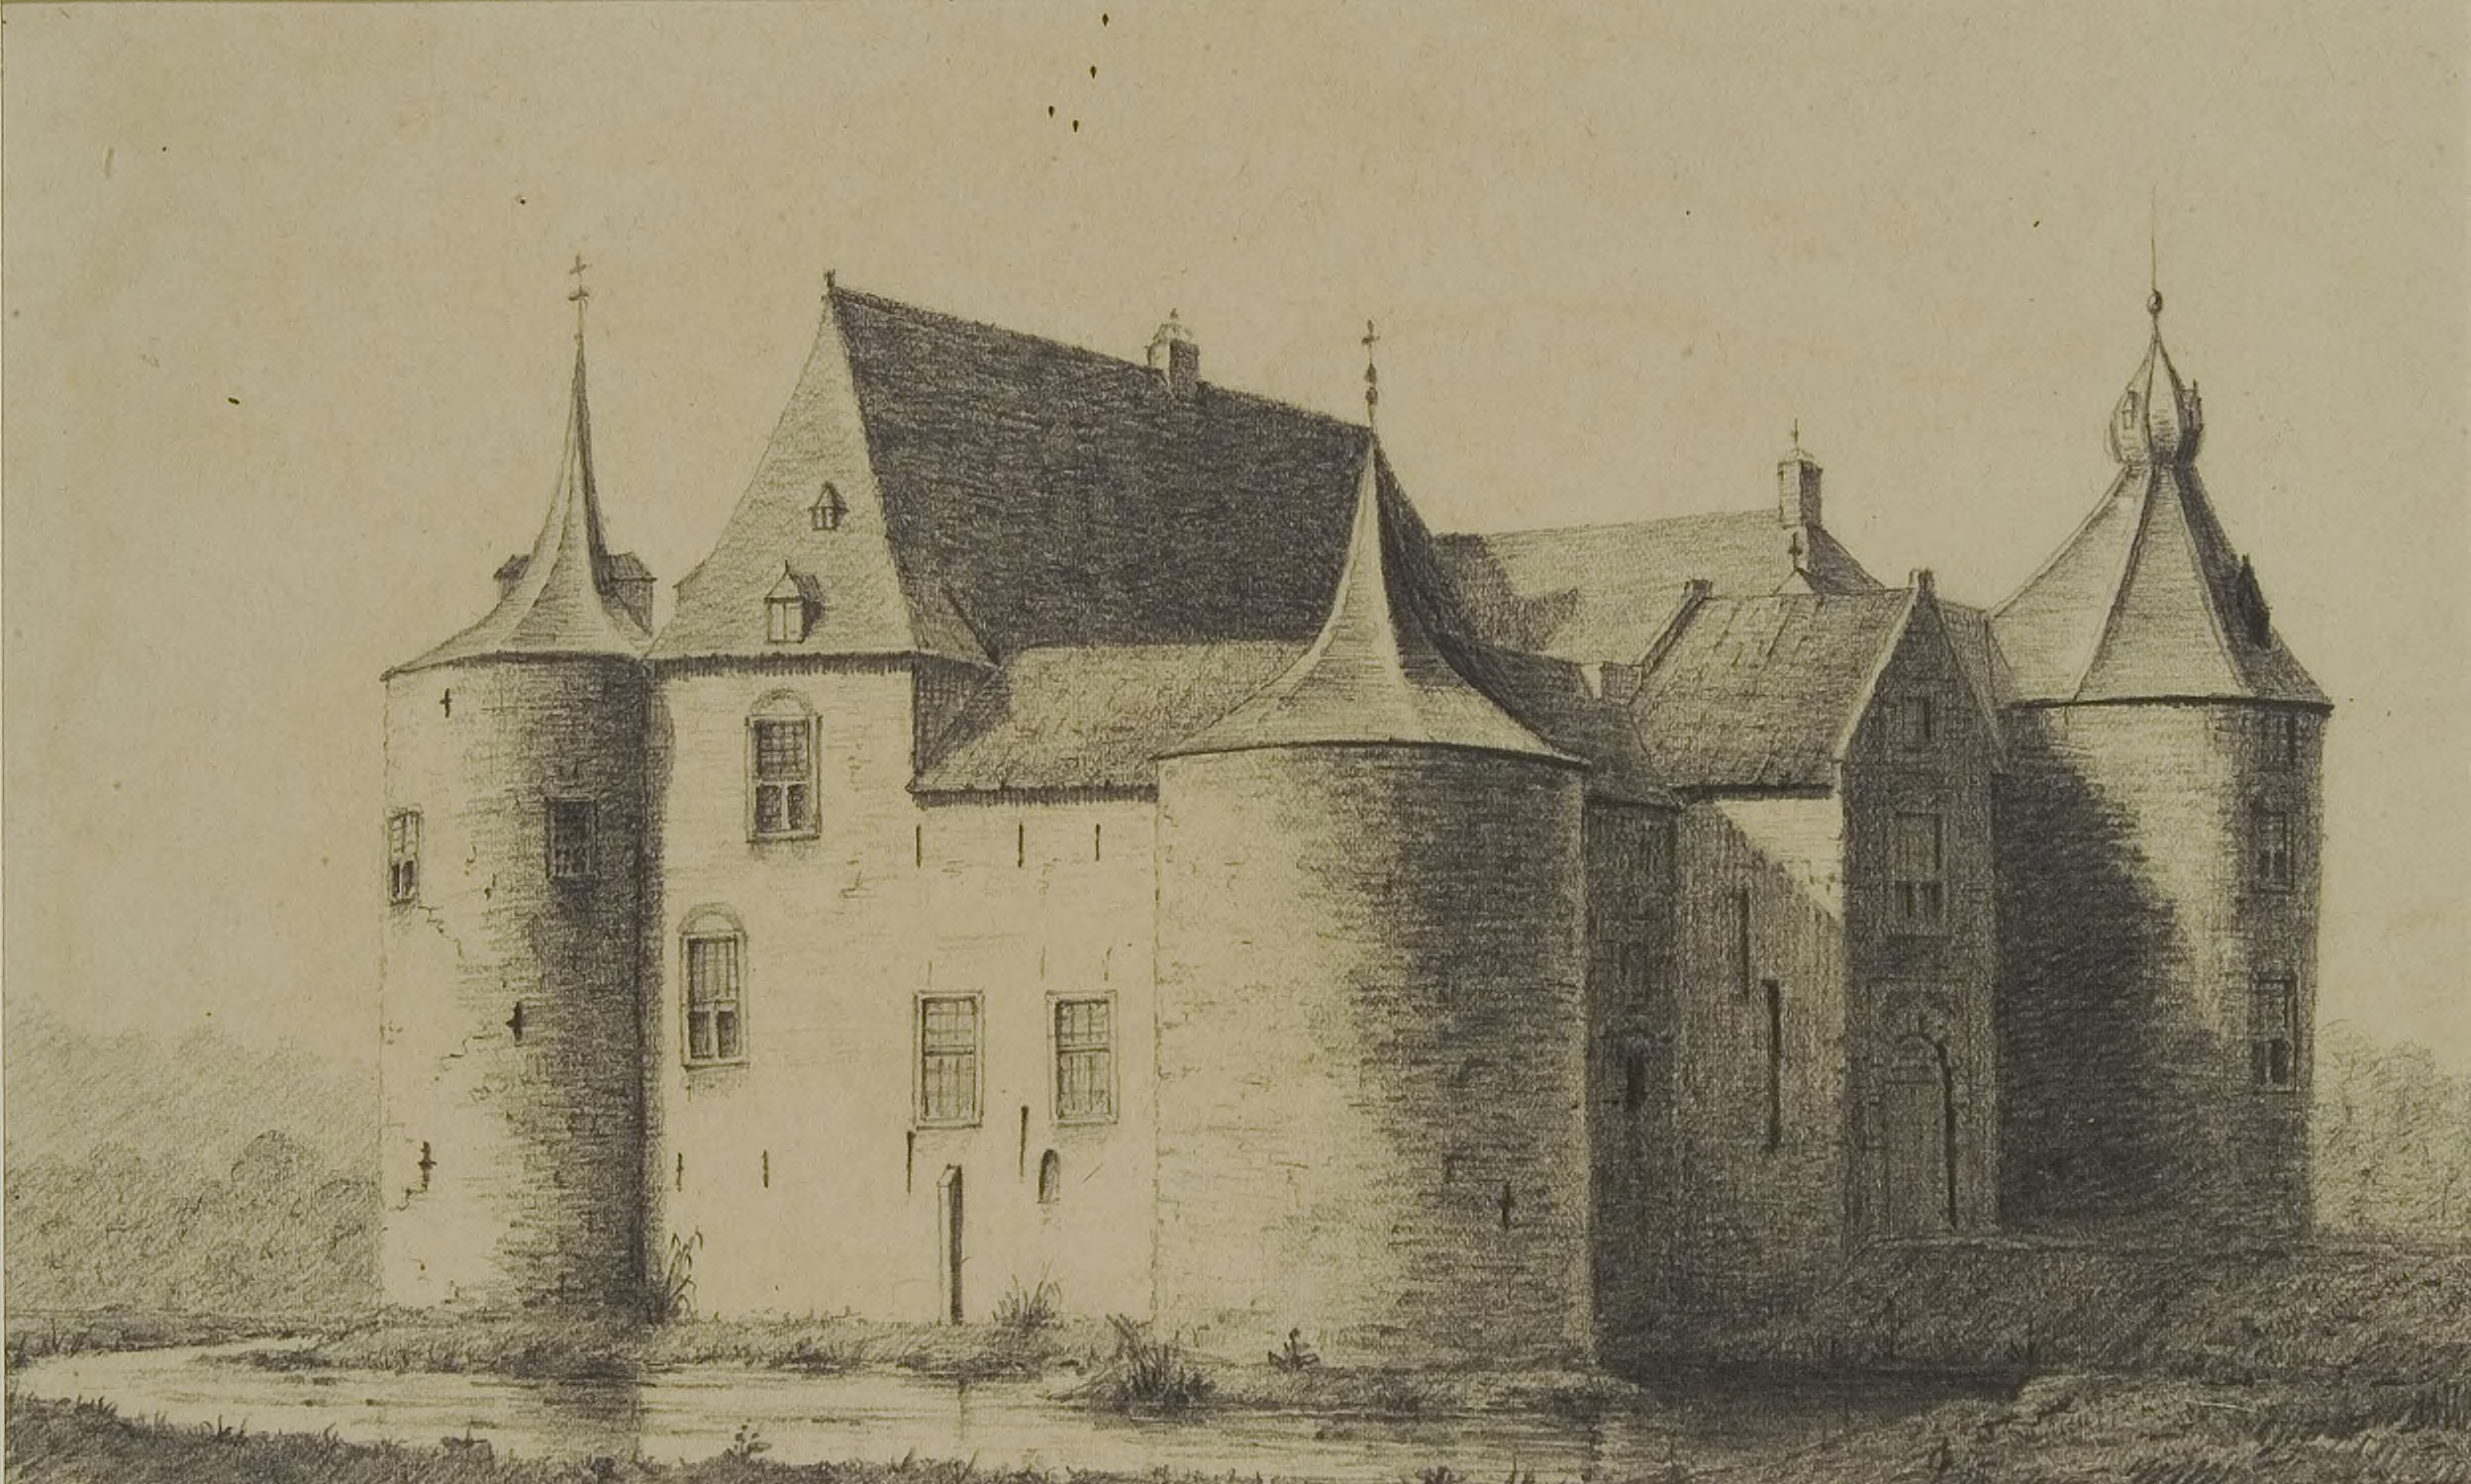 Tekening van kasteel Ammersoyen in 1880